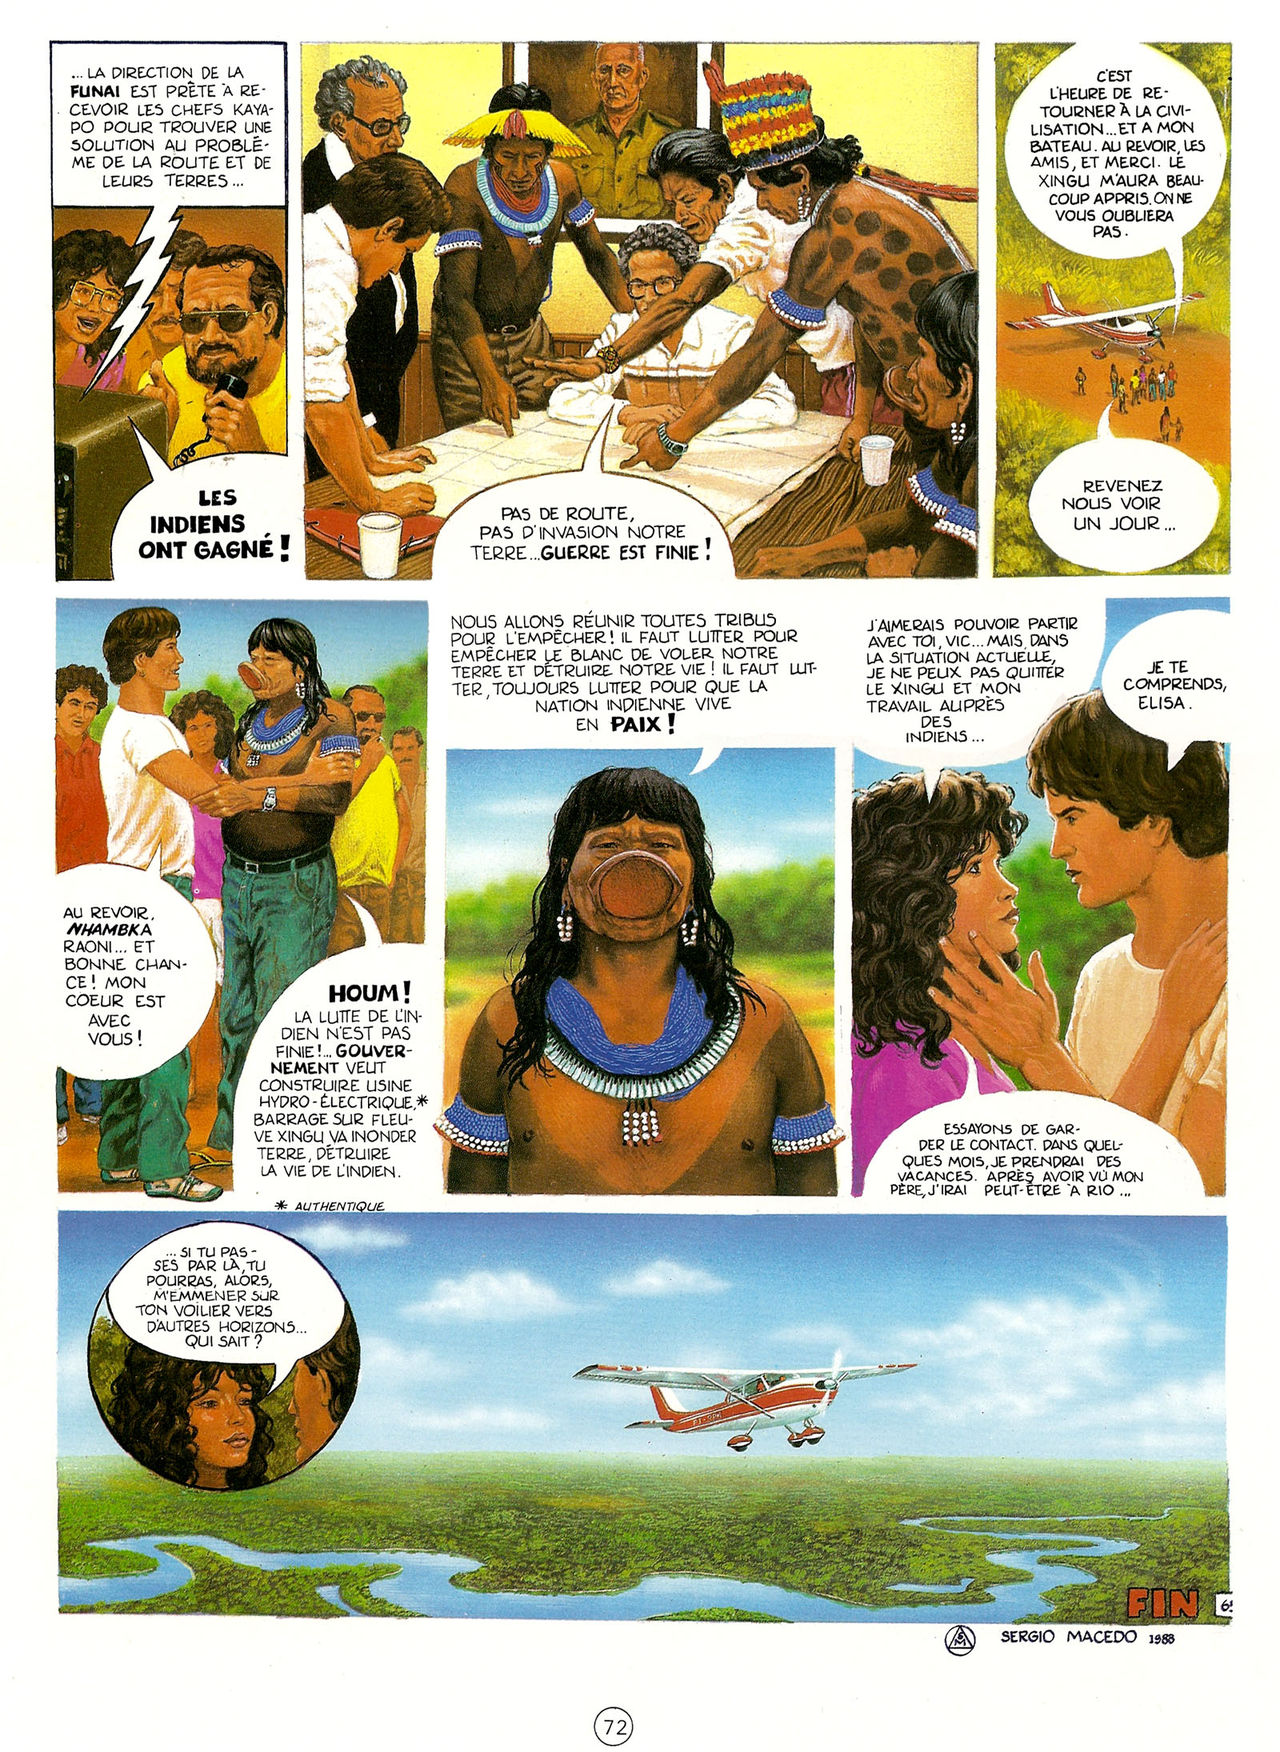 Les Aventures de Vic Voyage 05 - Brazil! numero d'image 72